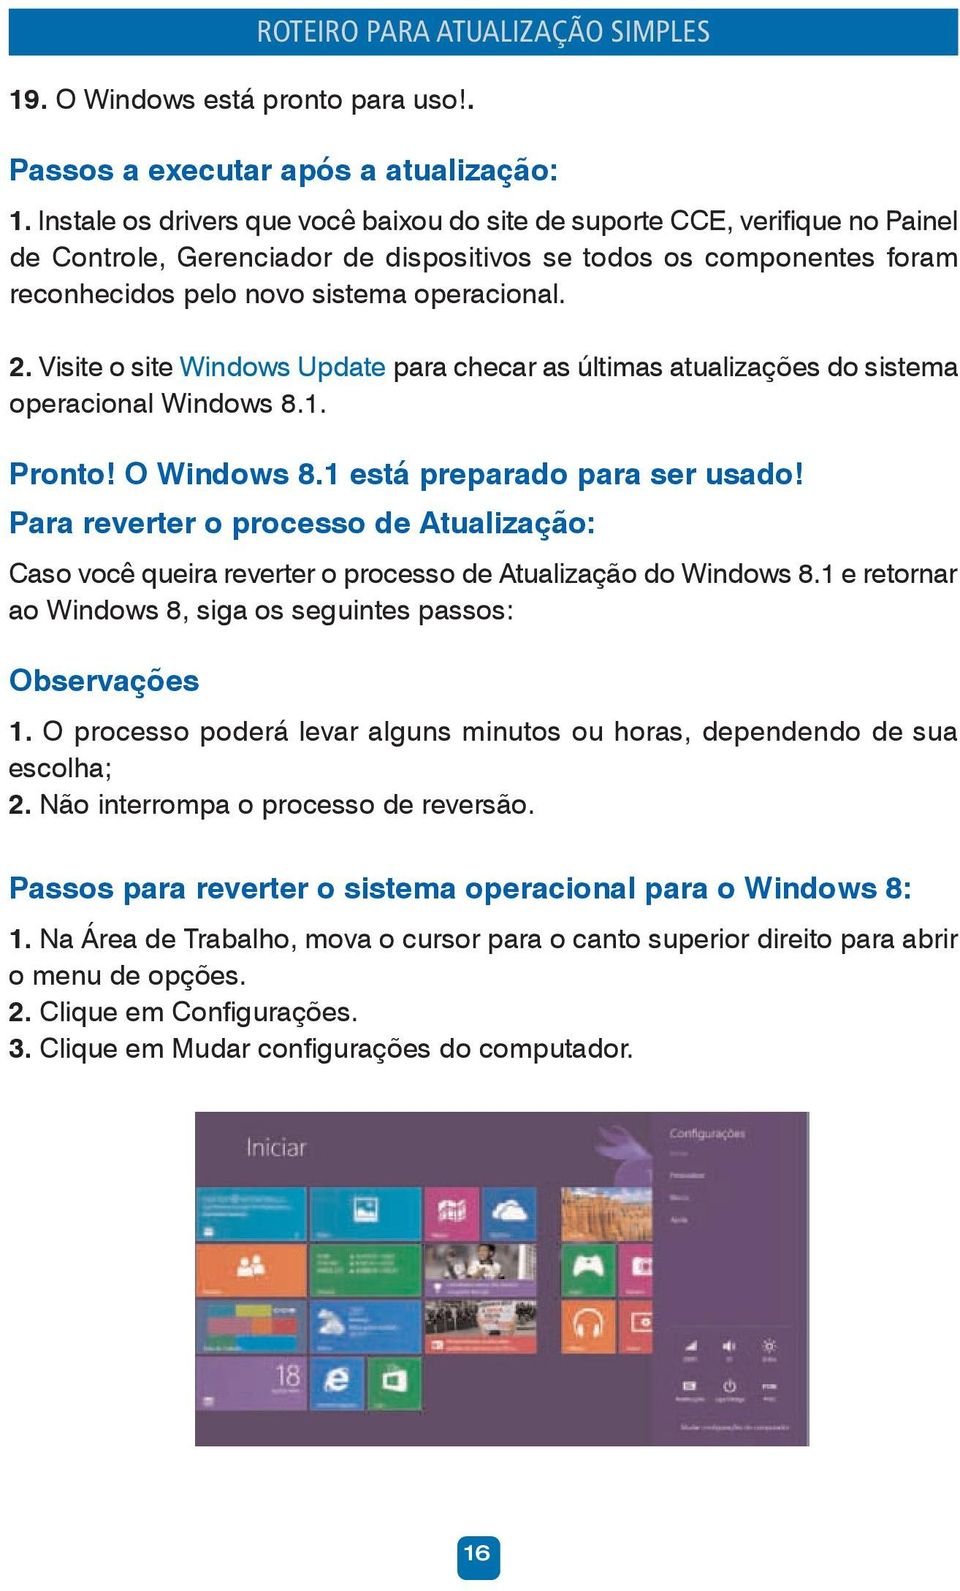 Visite o site Windows Update para checar as últimas atualizações do sistema operacional Windows 8.1. Pronto! O Windows 8.1 está preparado para ser usado!